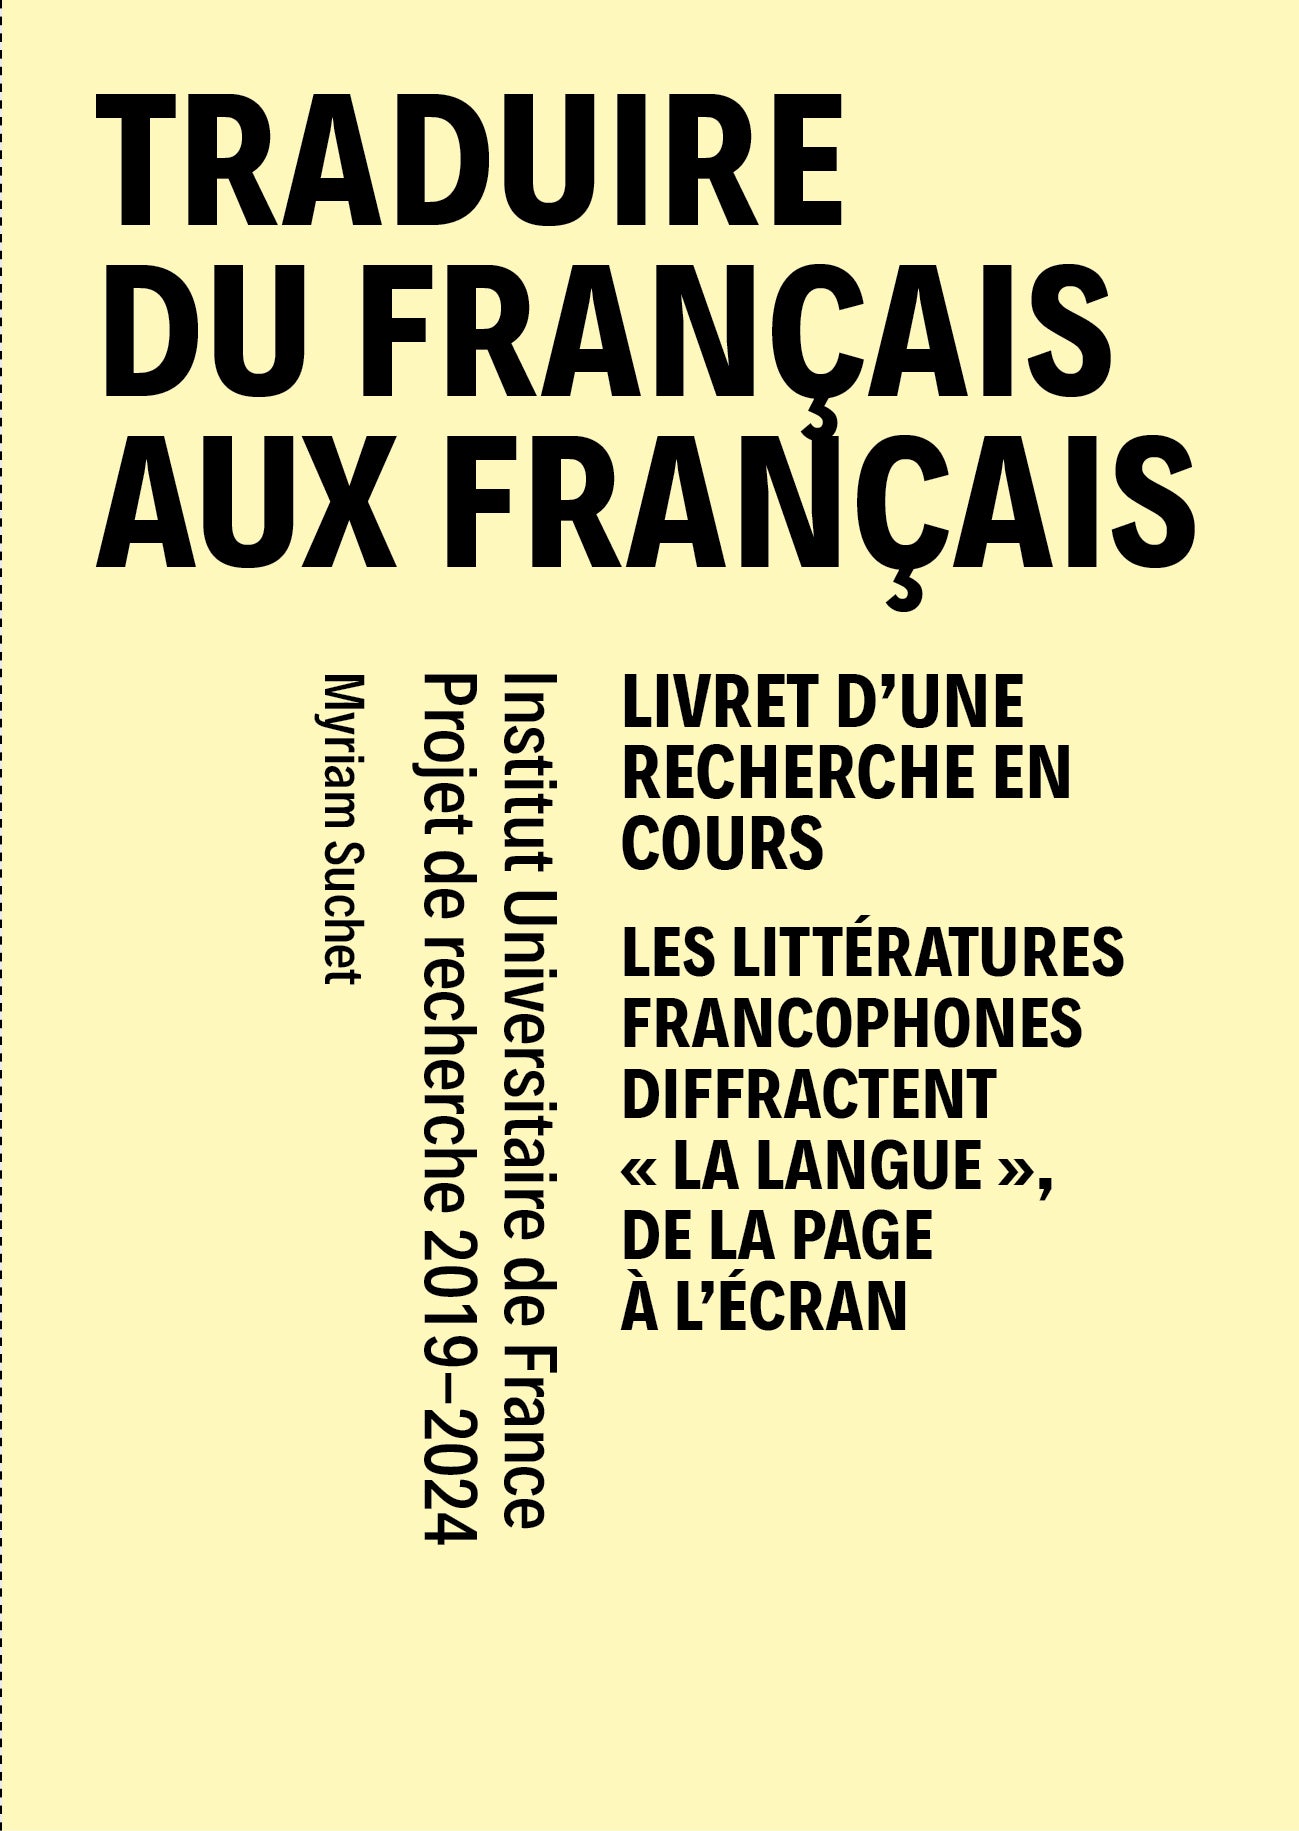 Couverture du livre Traduire du français aux français - n°1 Déc. 2020 - Janv. 2021